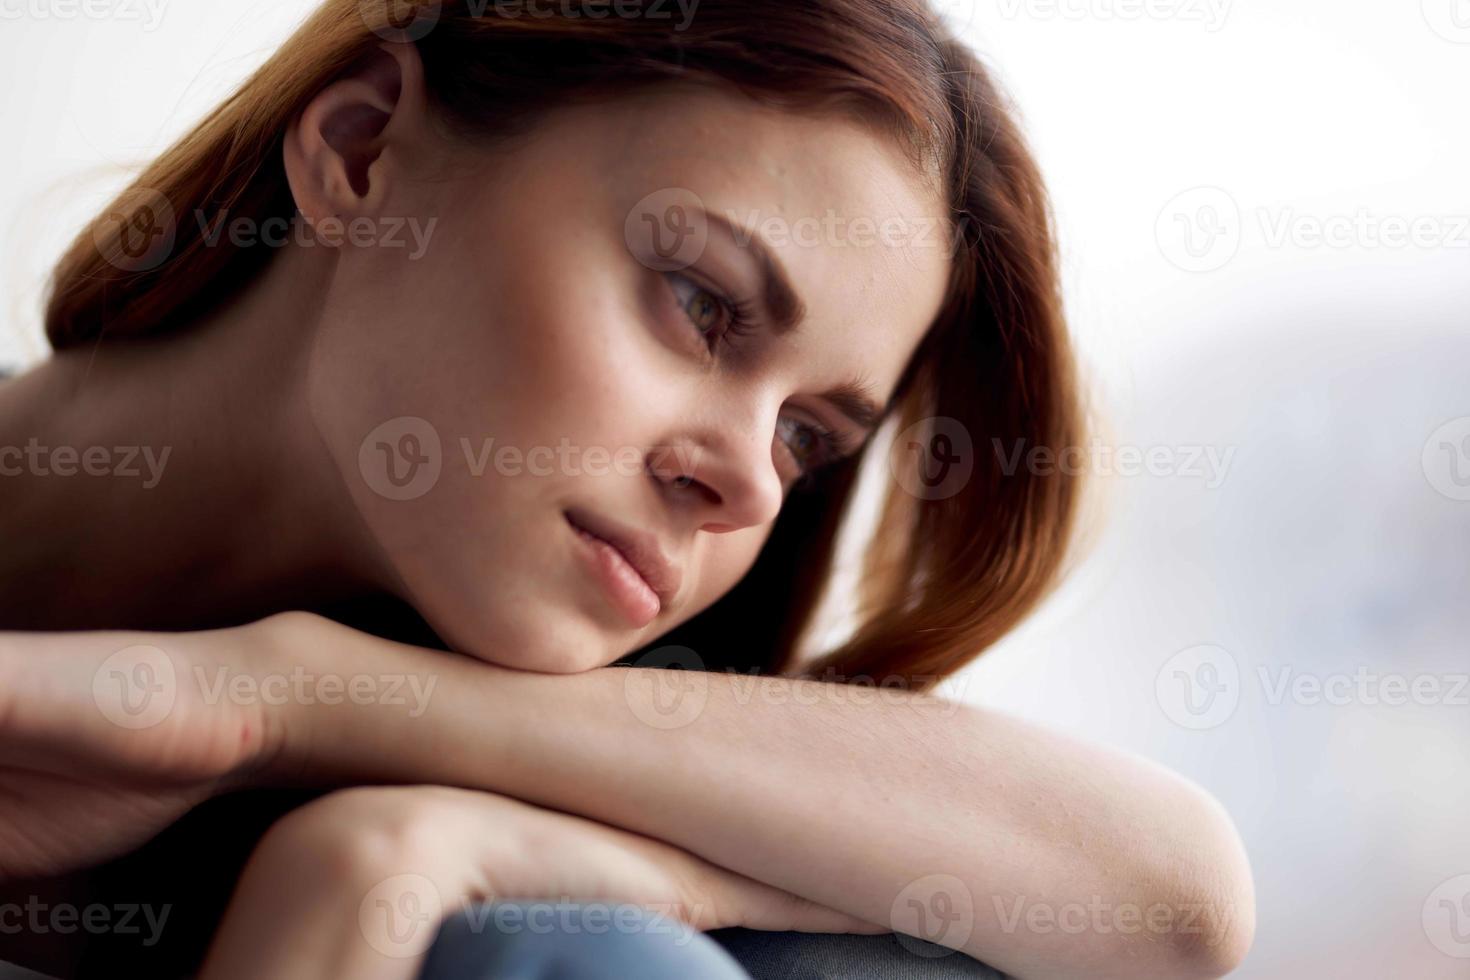 vrouw aantrekkelijk kijken met een blauw plaid ochtend- foto